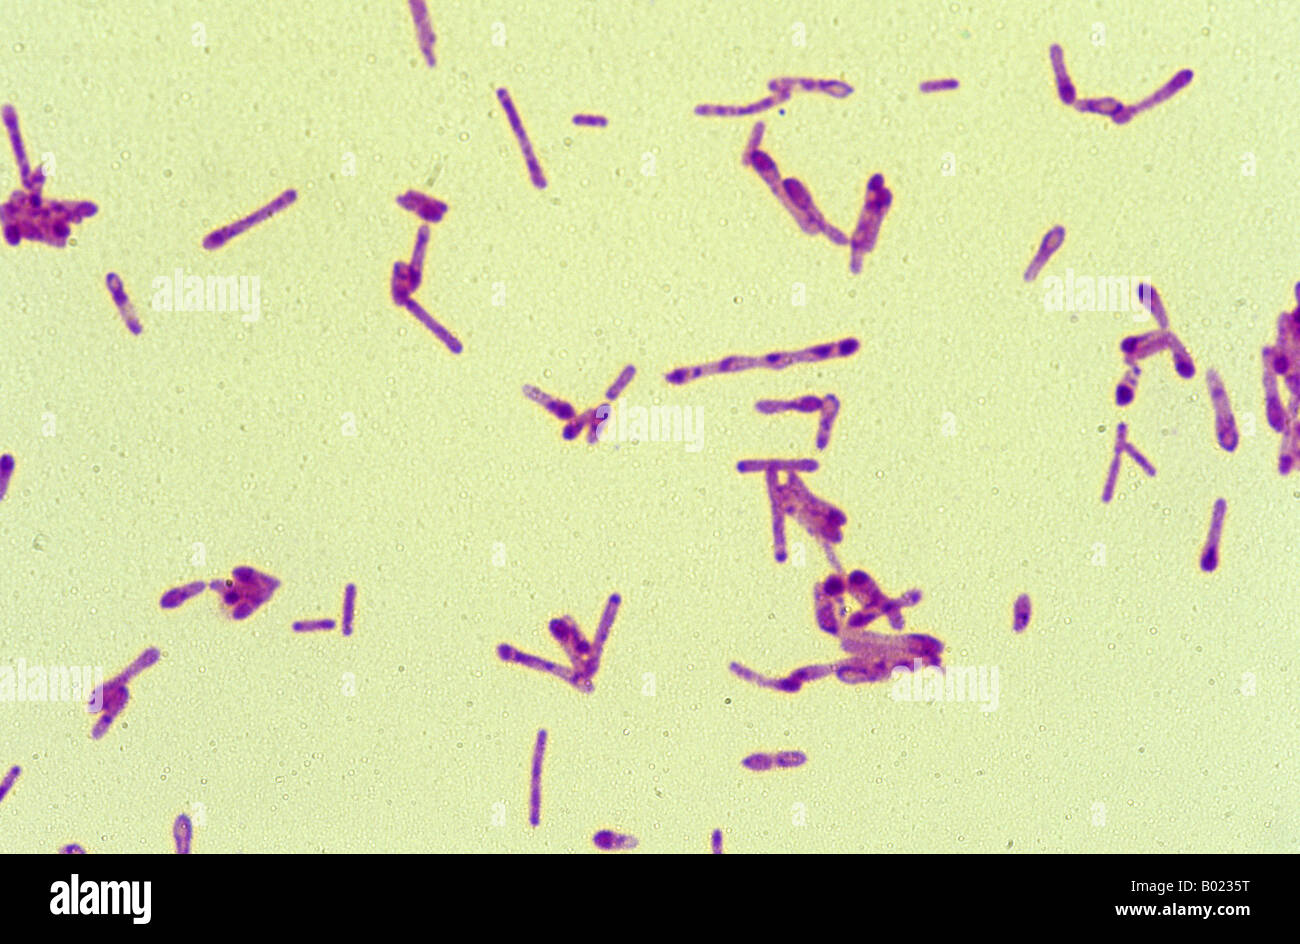 Clostridium botulinum bacteria Stock Photo